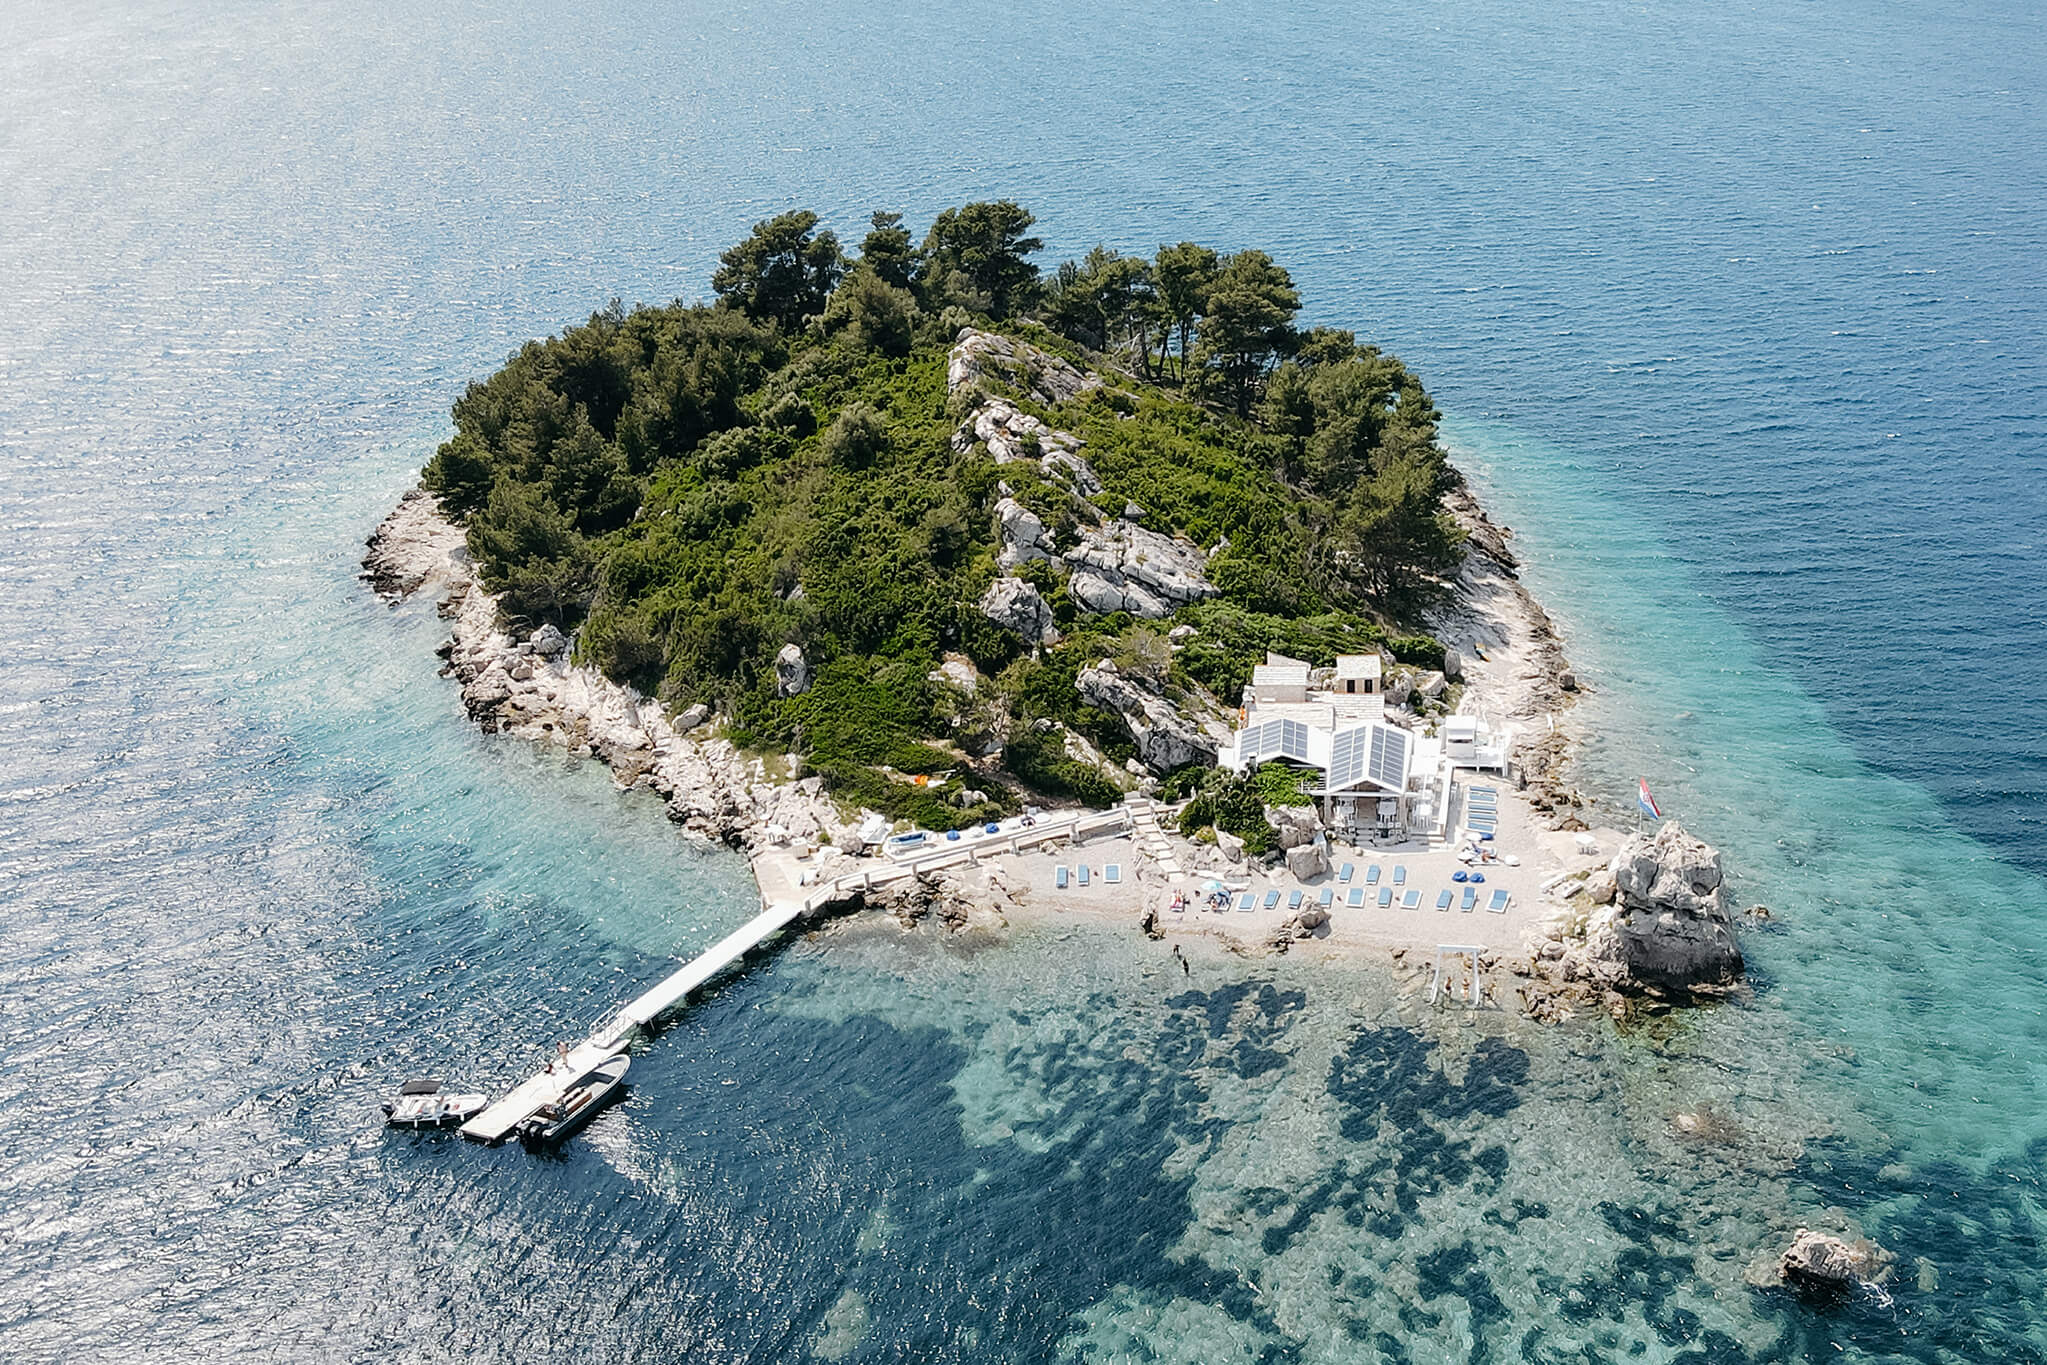 Heiraten auf einer Insel in Kroatien